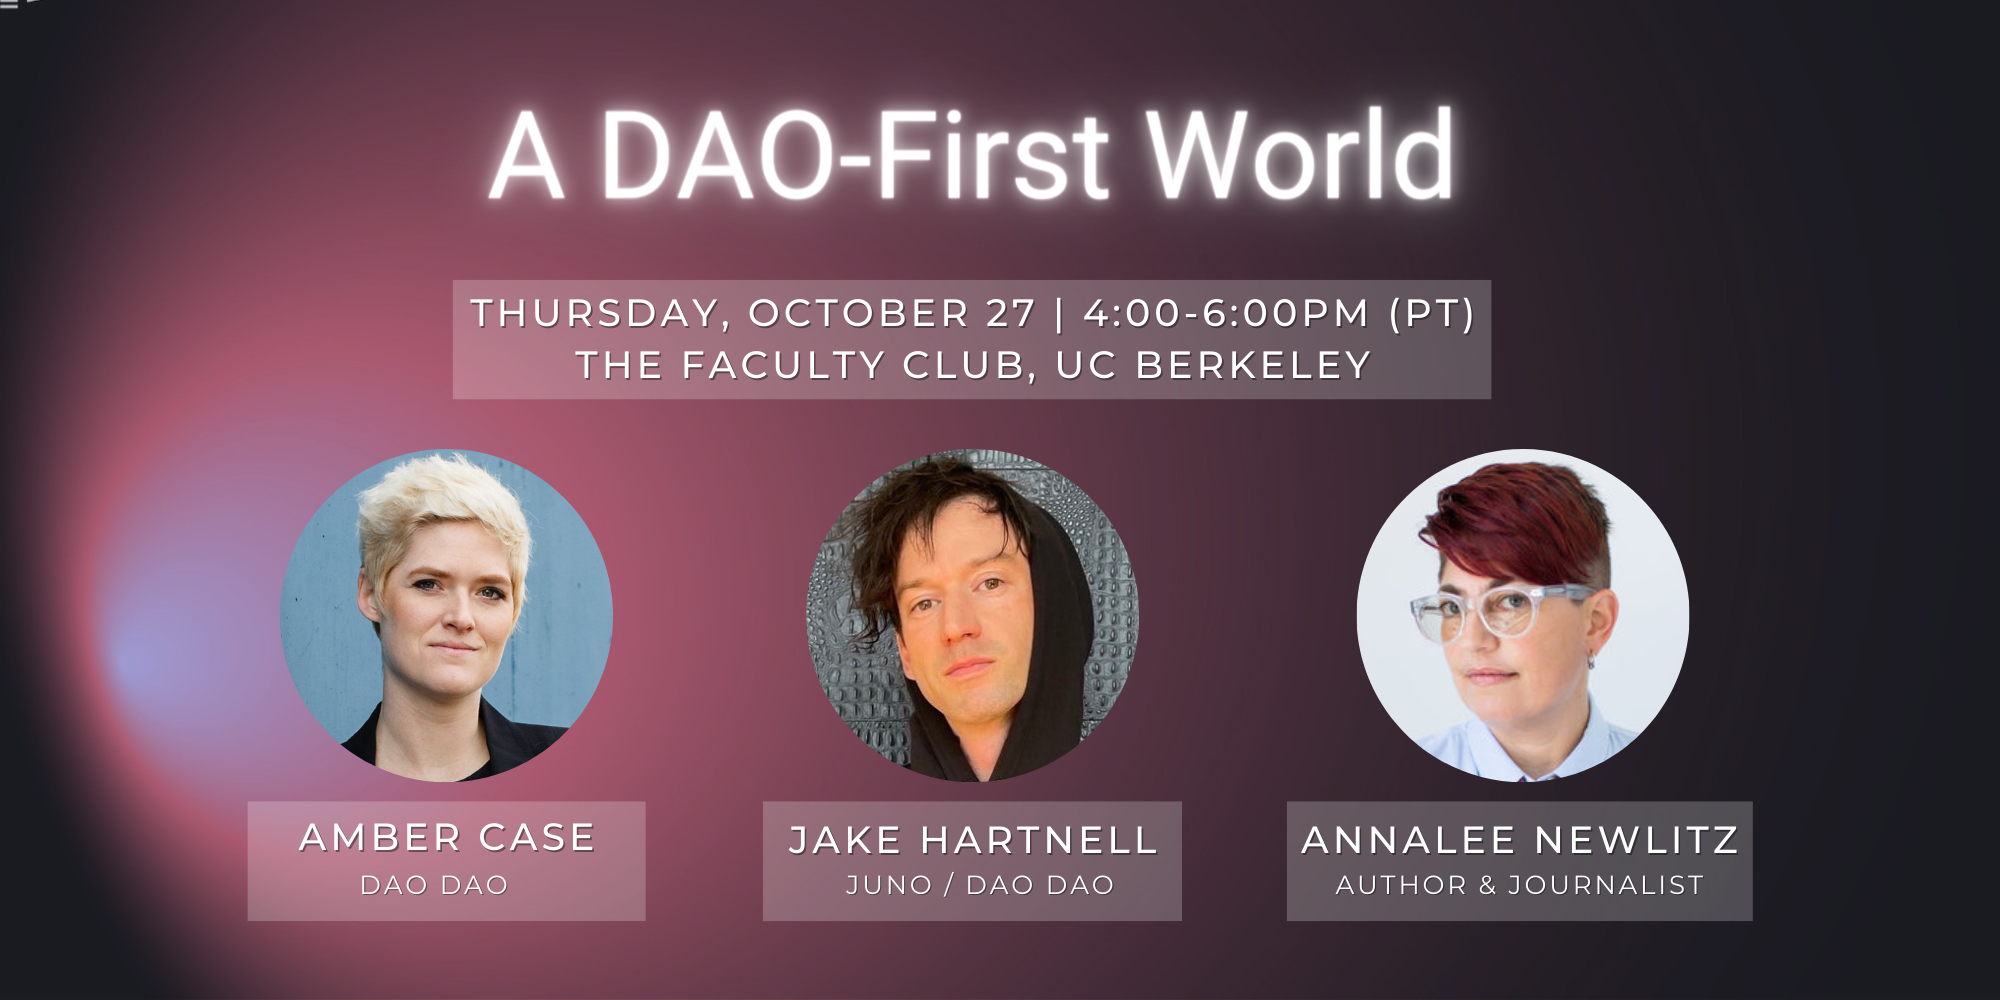 A DAO First World panelists